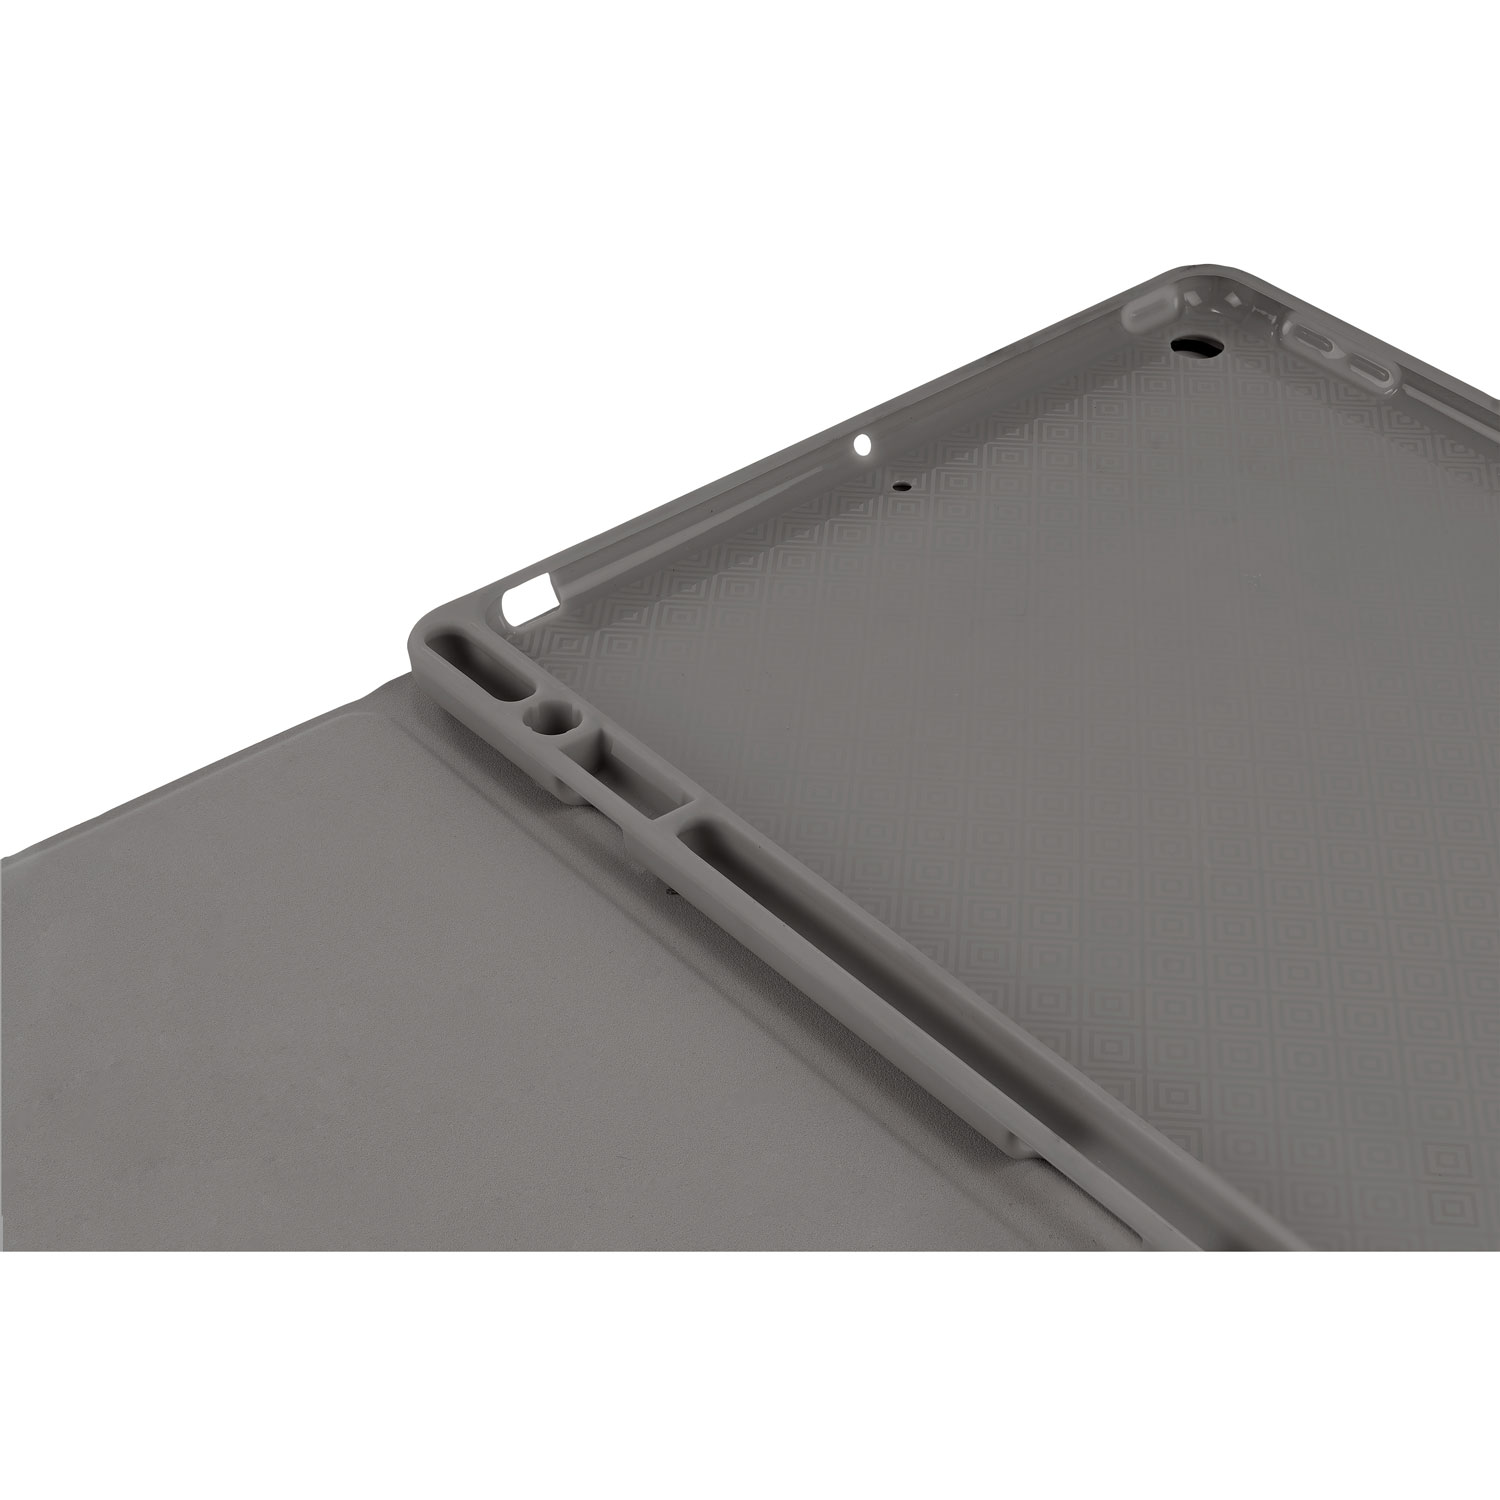 Étui en métal Tucano gris sidéral pour iPad Air 10,9 2020